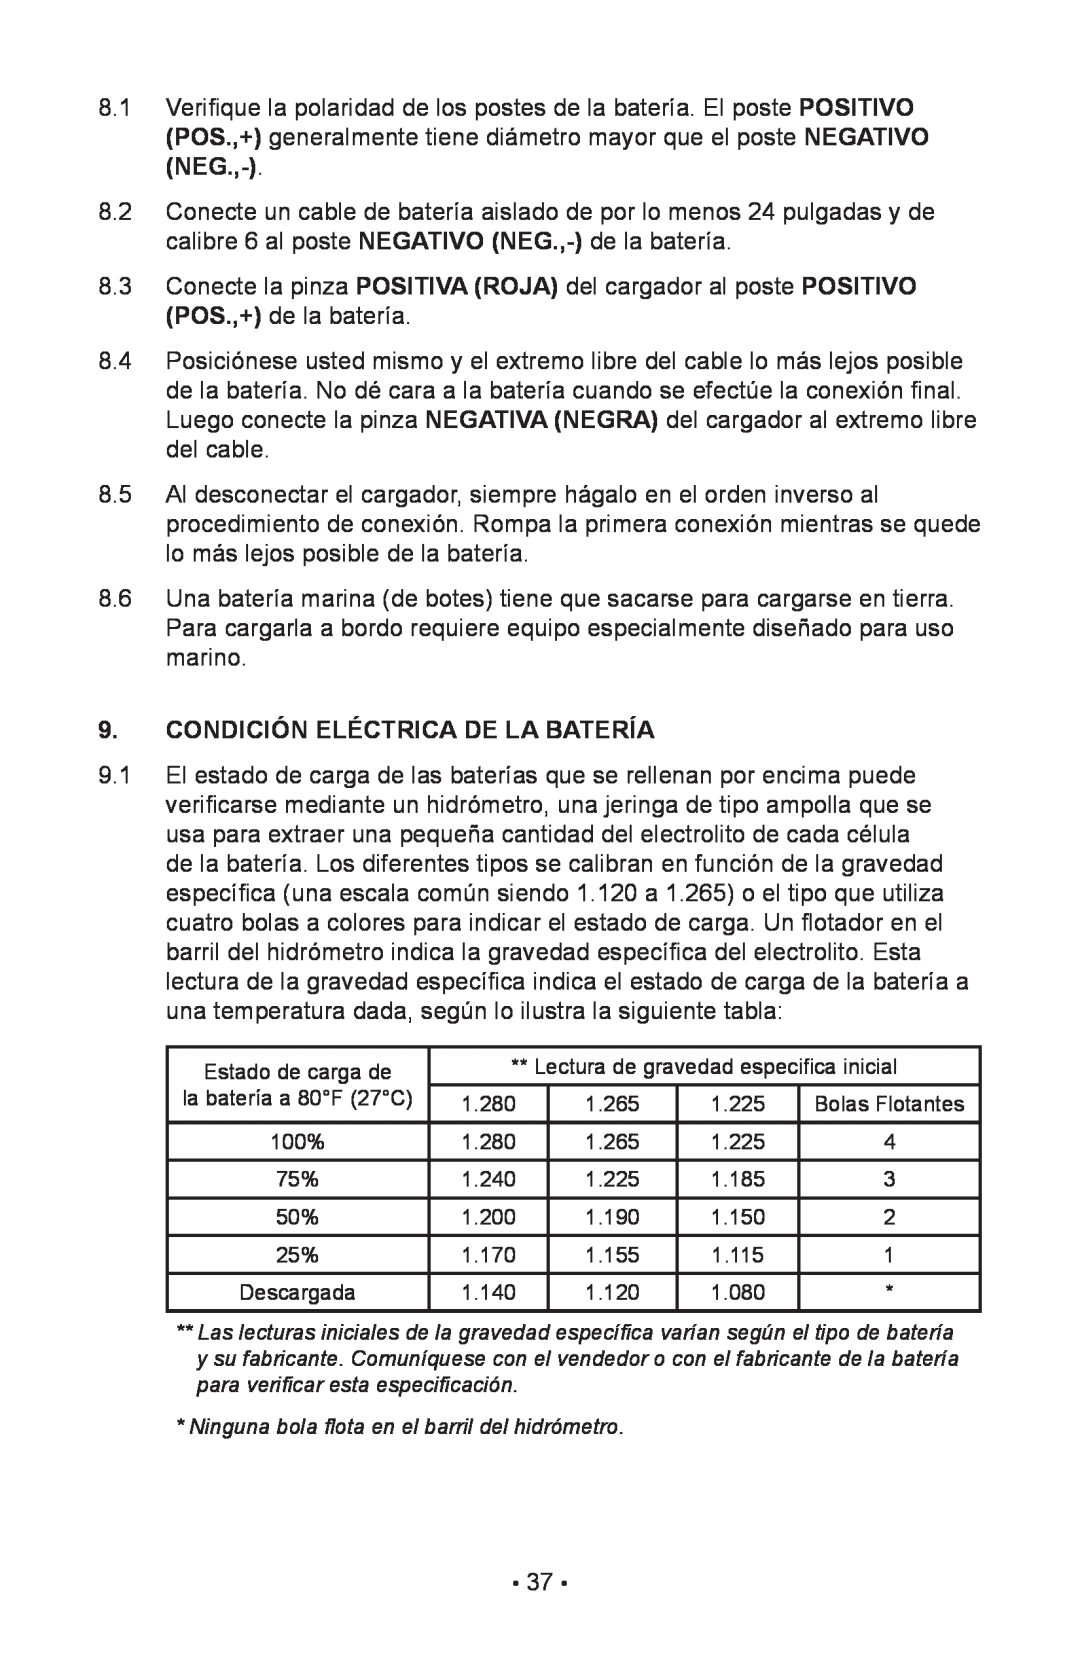 Schumacher 85-716 instruction manual Condición Eléctrica De La Batería, Ninguna bola flota en el barril del hidrómetro 